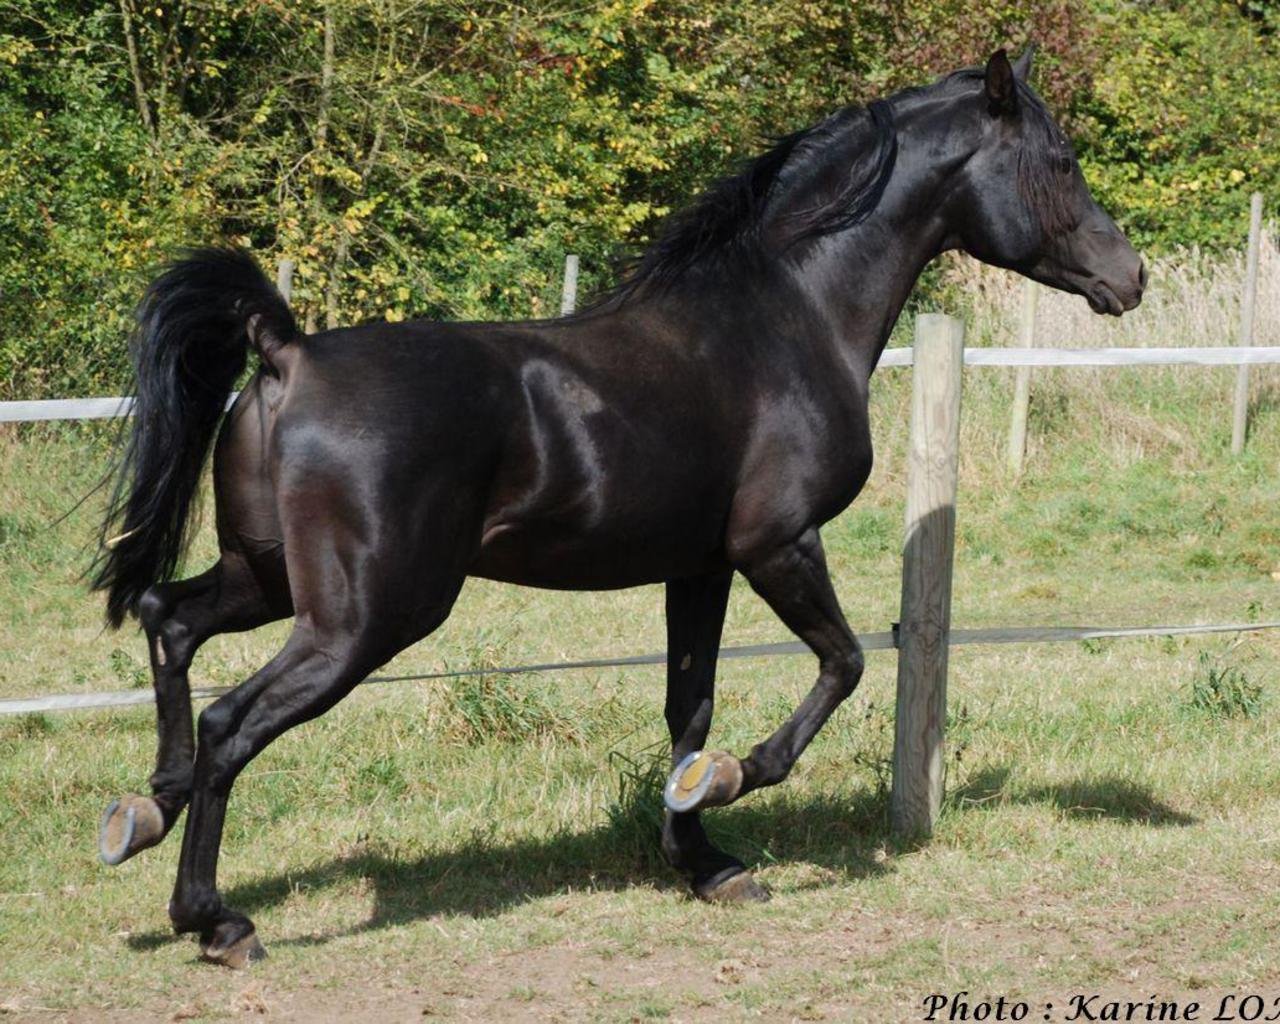 Рассмотрите фотографию черной лошади породы кабардинская. Англо-Кабардинская лошадь. Кабардинская порода лошадей. Англо карачаевская порода лошадей. Карачаевская порода лошадей.